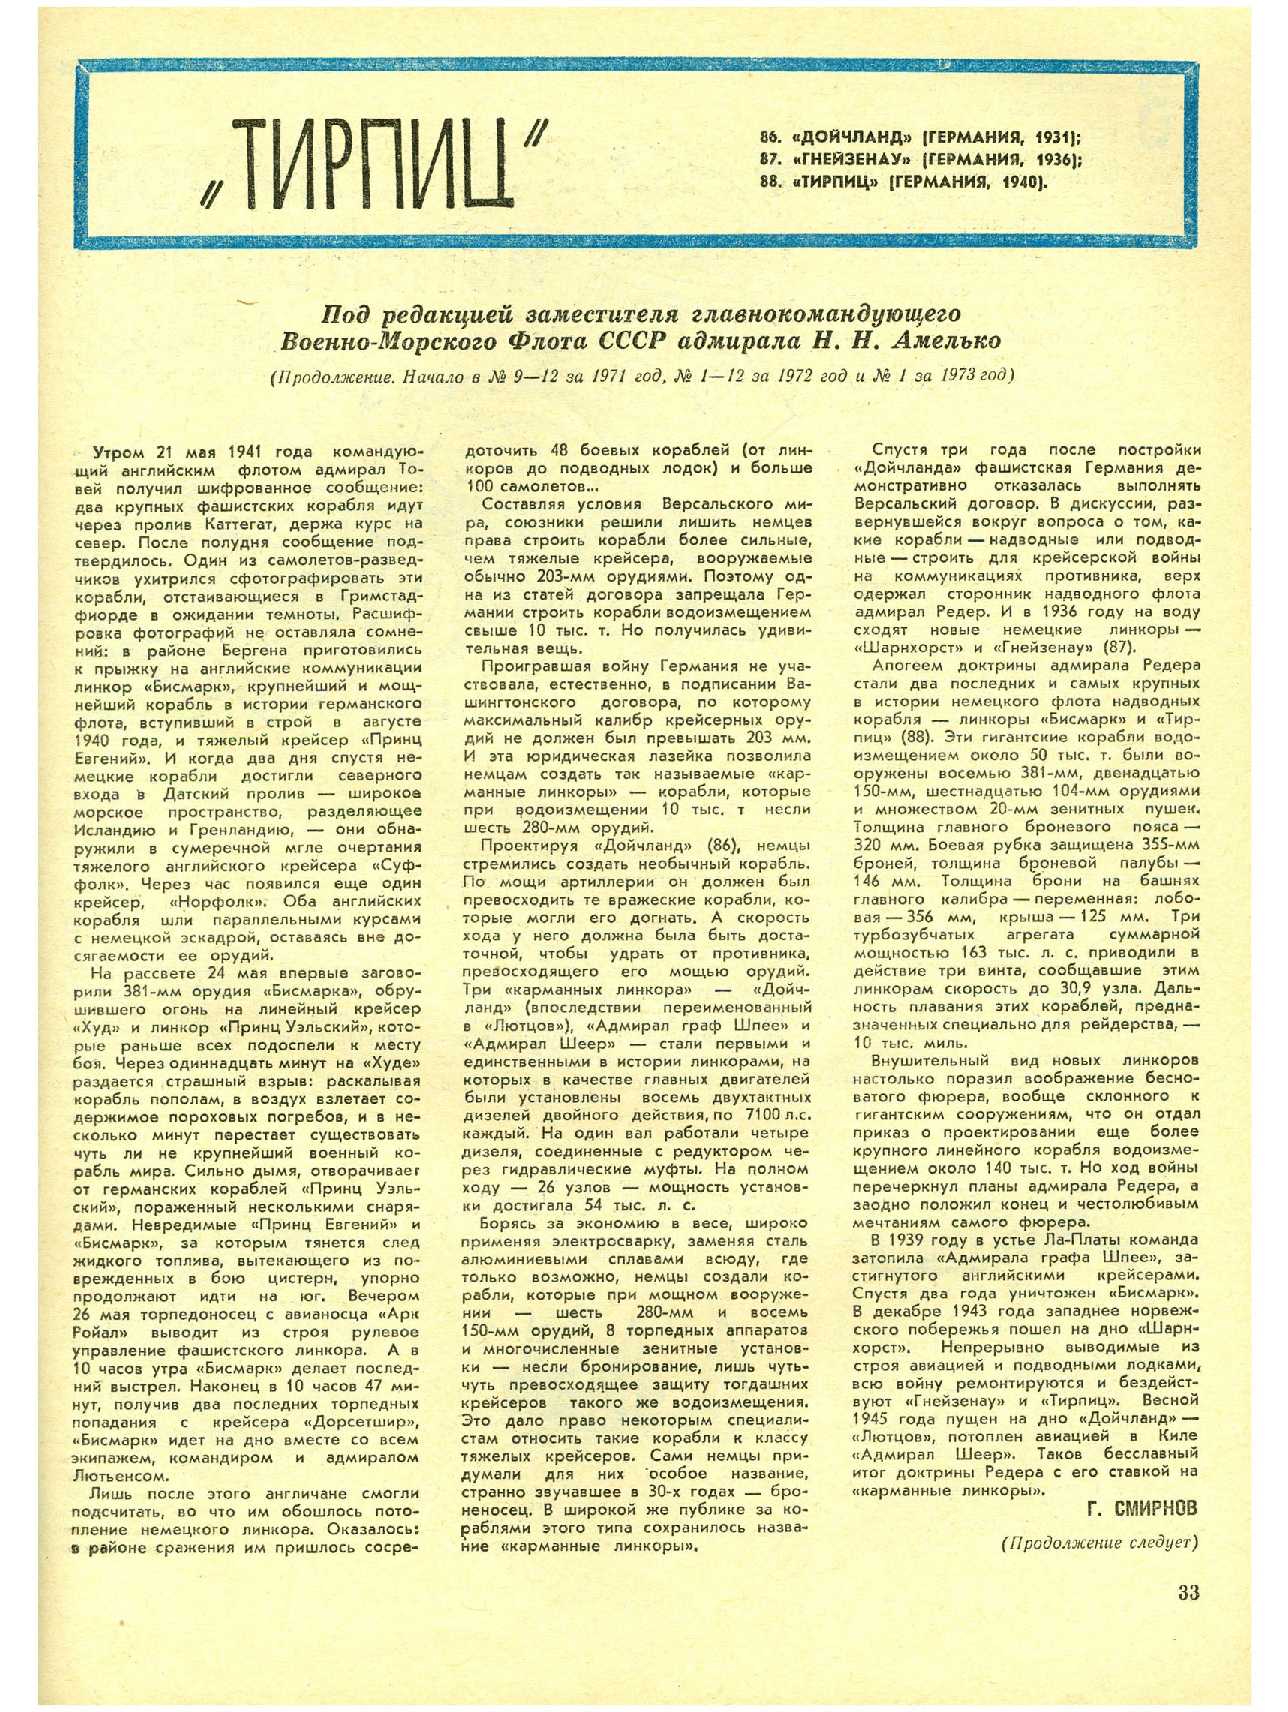 МК 2, 1973, 33 c.